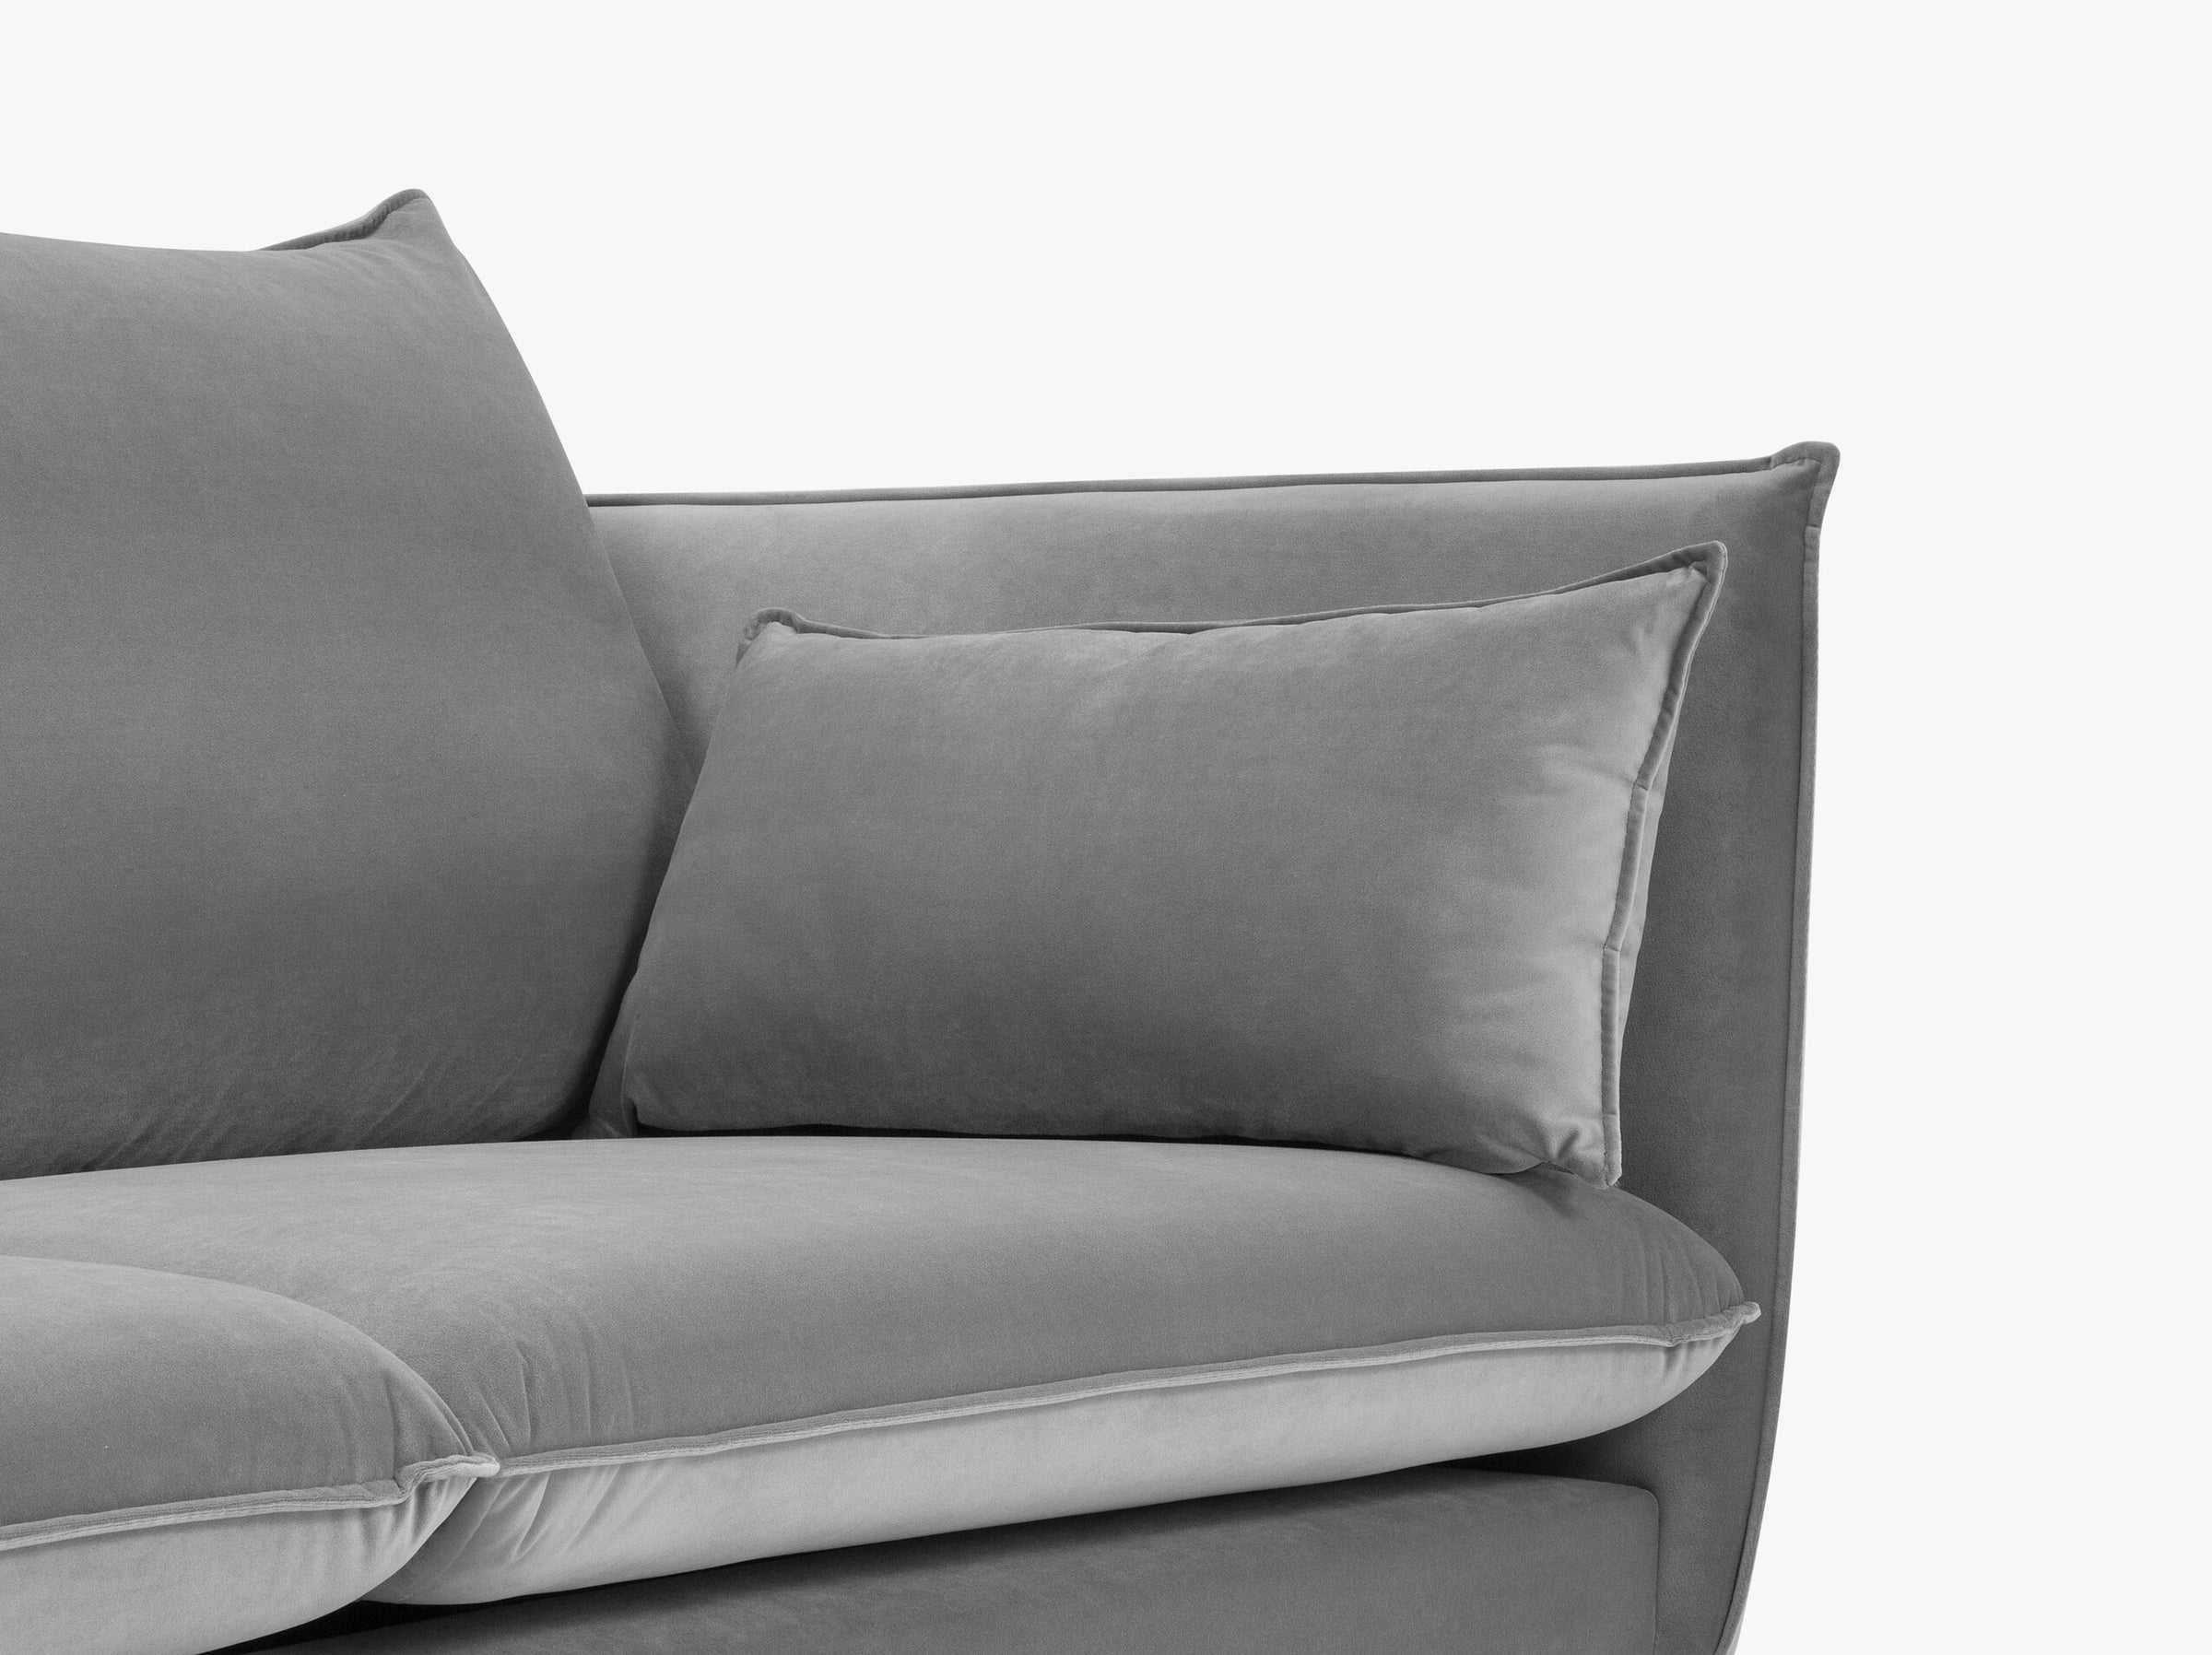 Agate sofás terciopelo gris claro